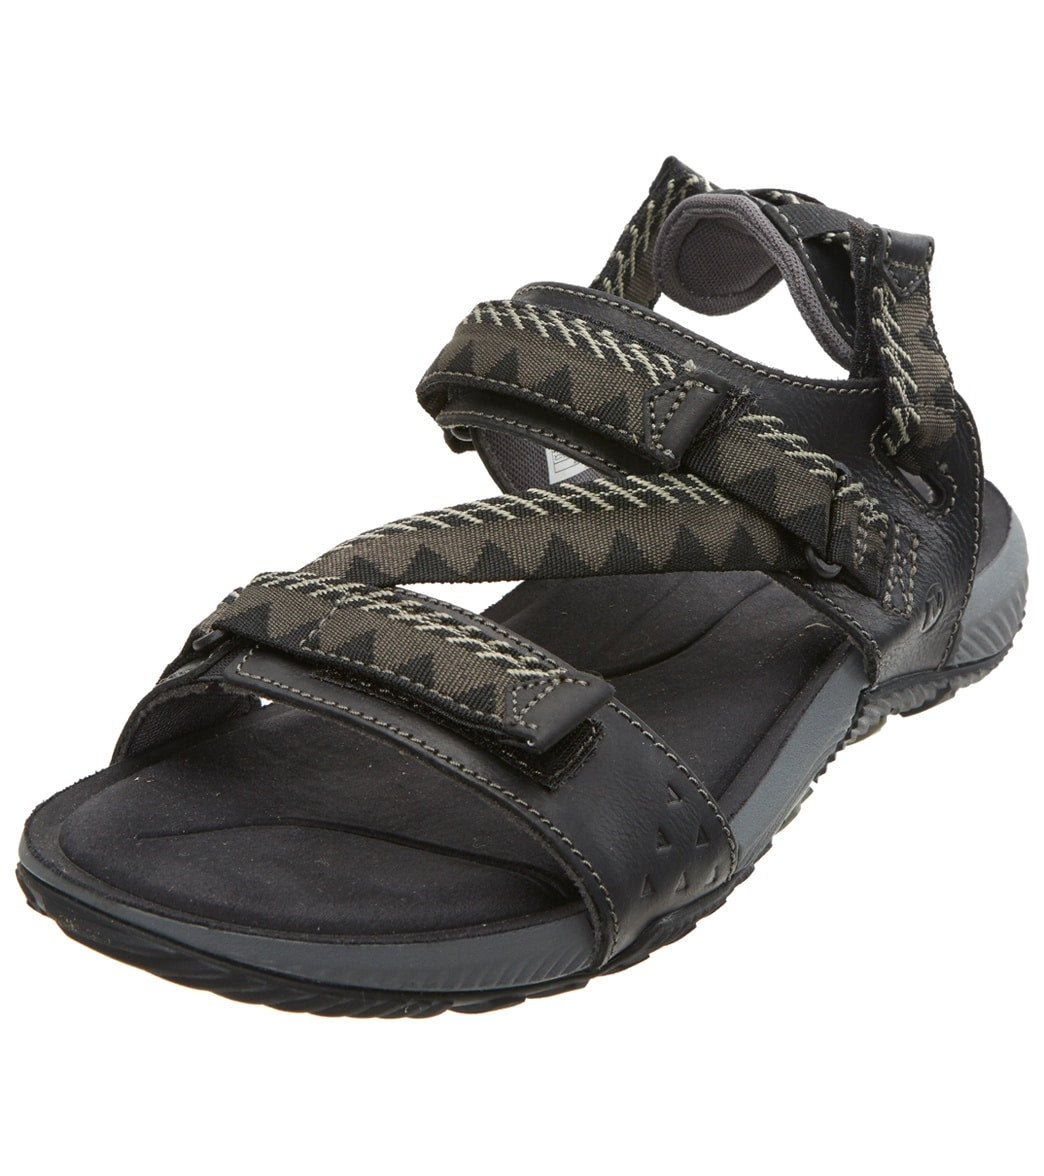 Merrell Men's Terrant Convertible Sandals - Black 13 - Swimoutlet.com